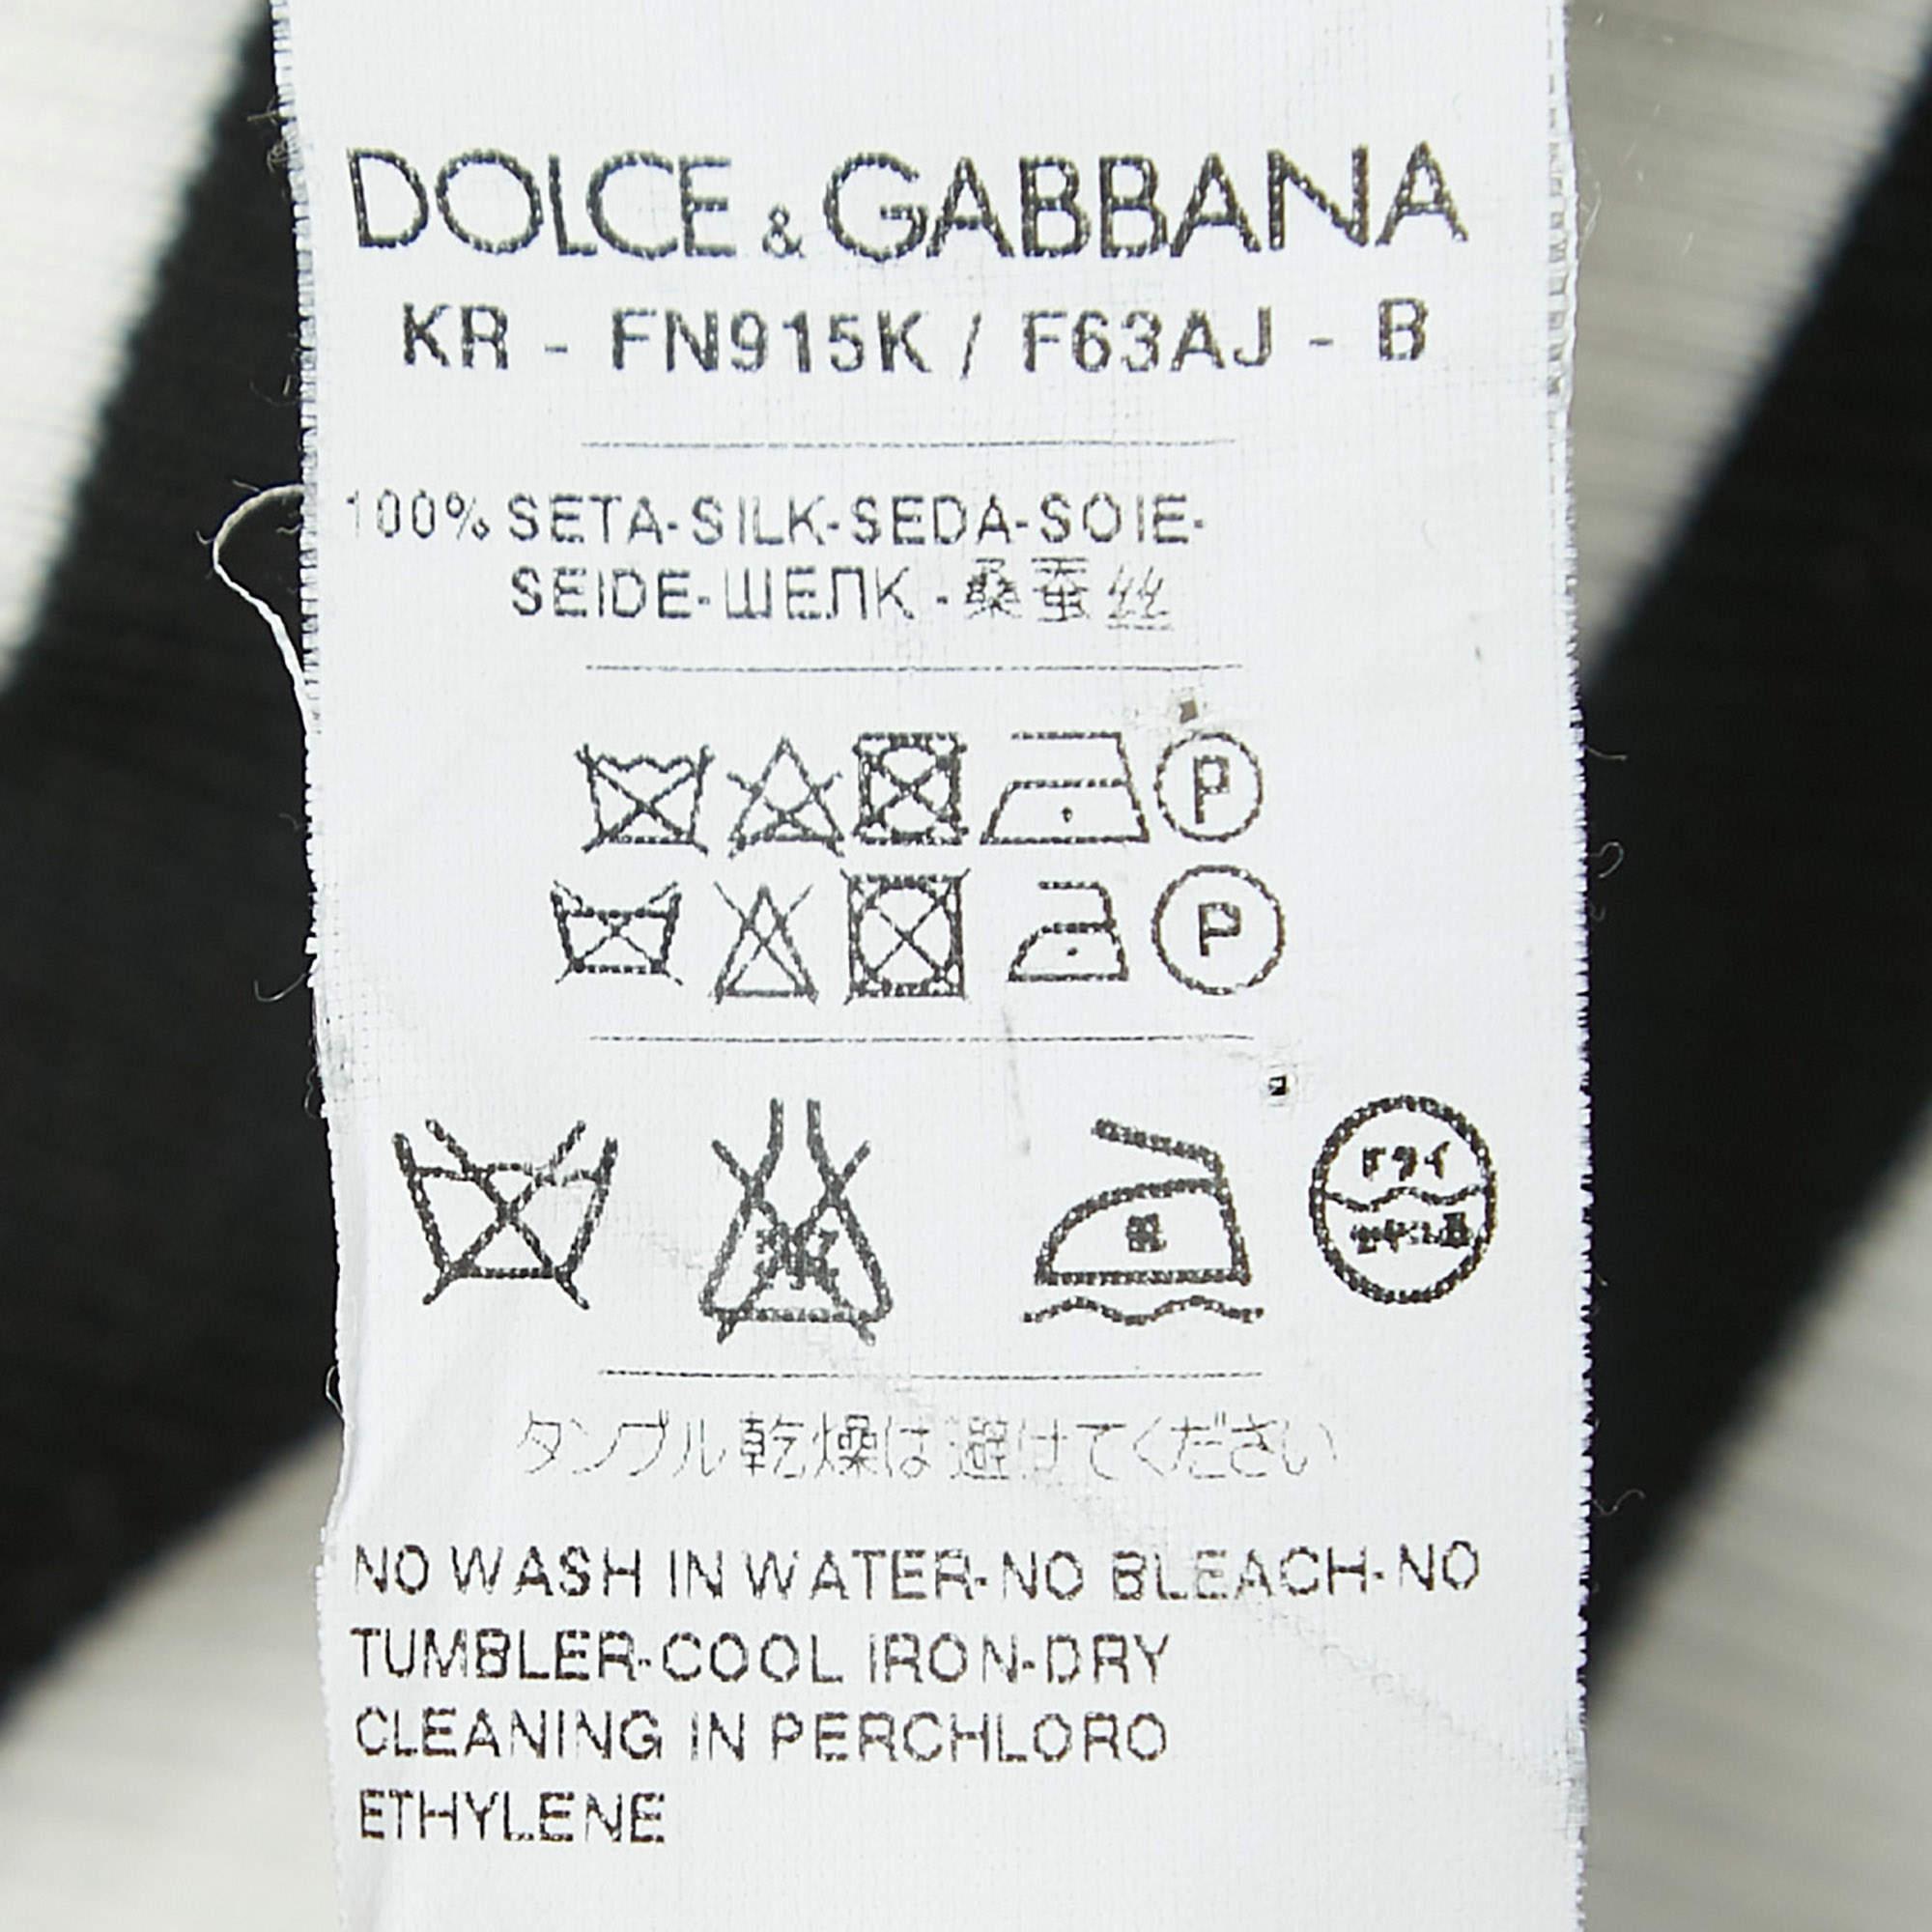 Dolce & Gabbana Black/White Striped Silk Knit Tank Top S 1